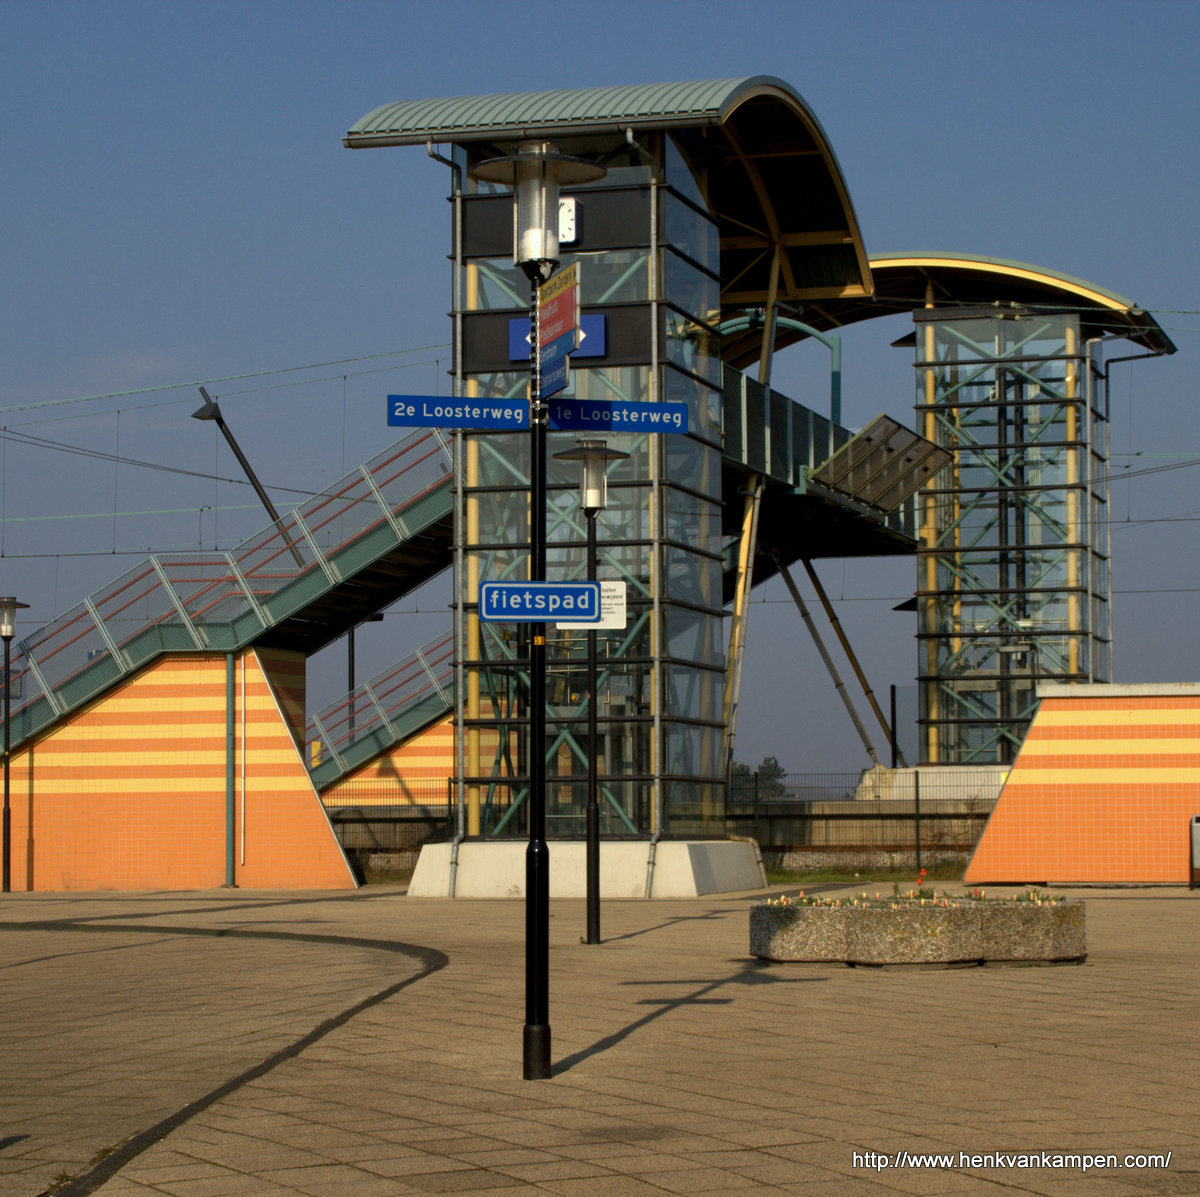 Hillegom Station